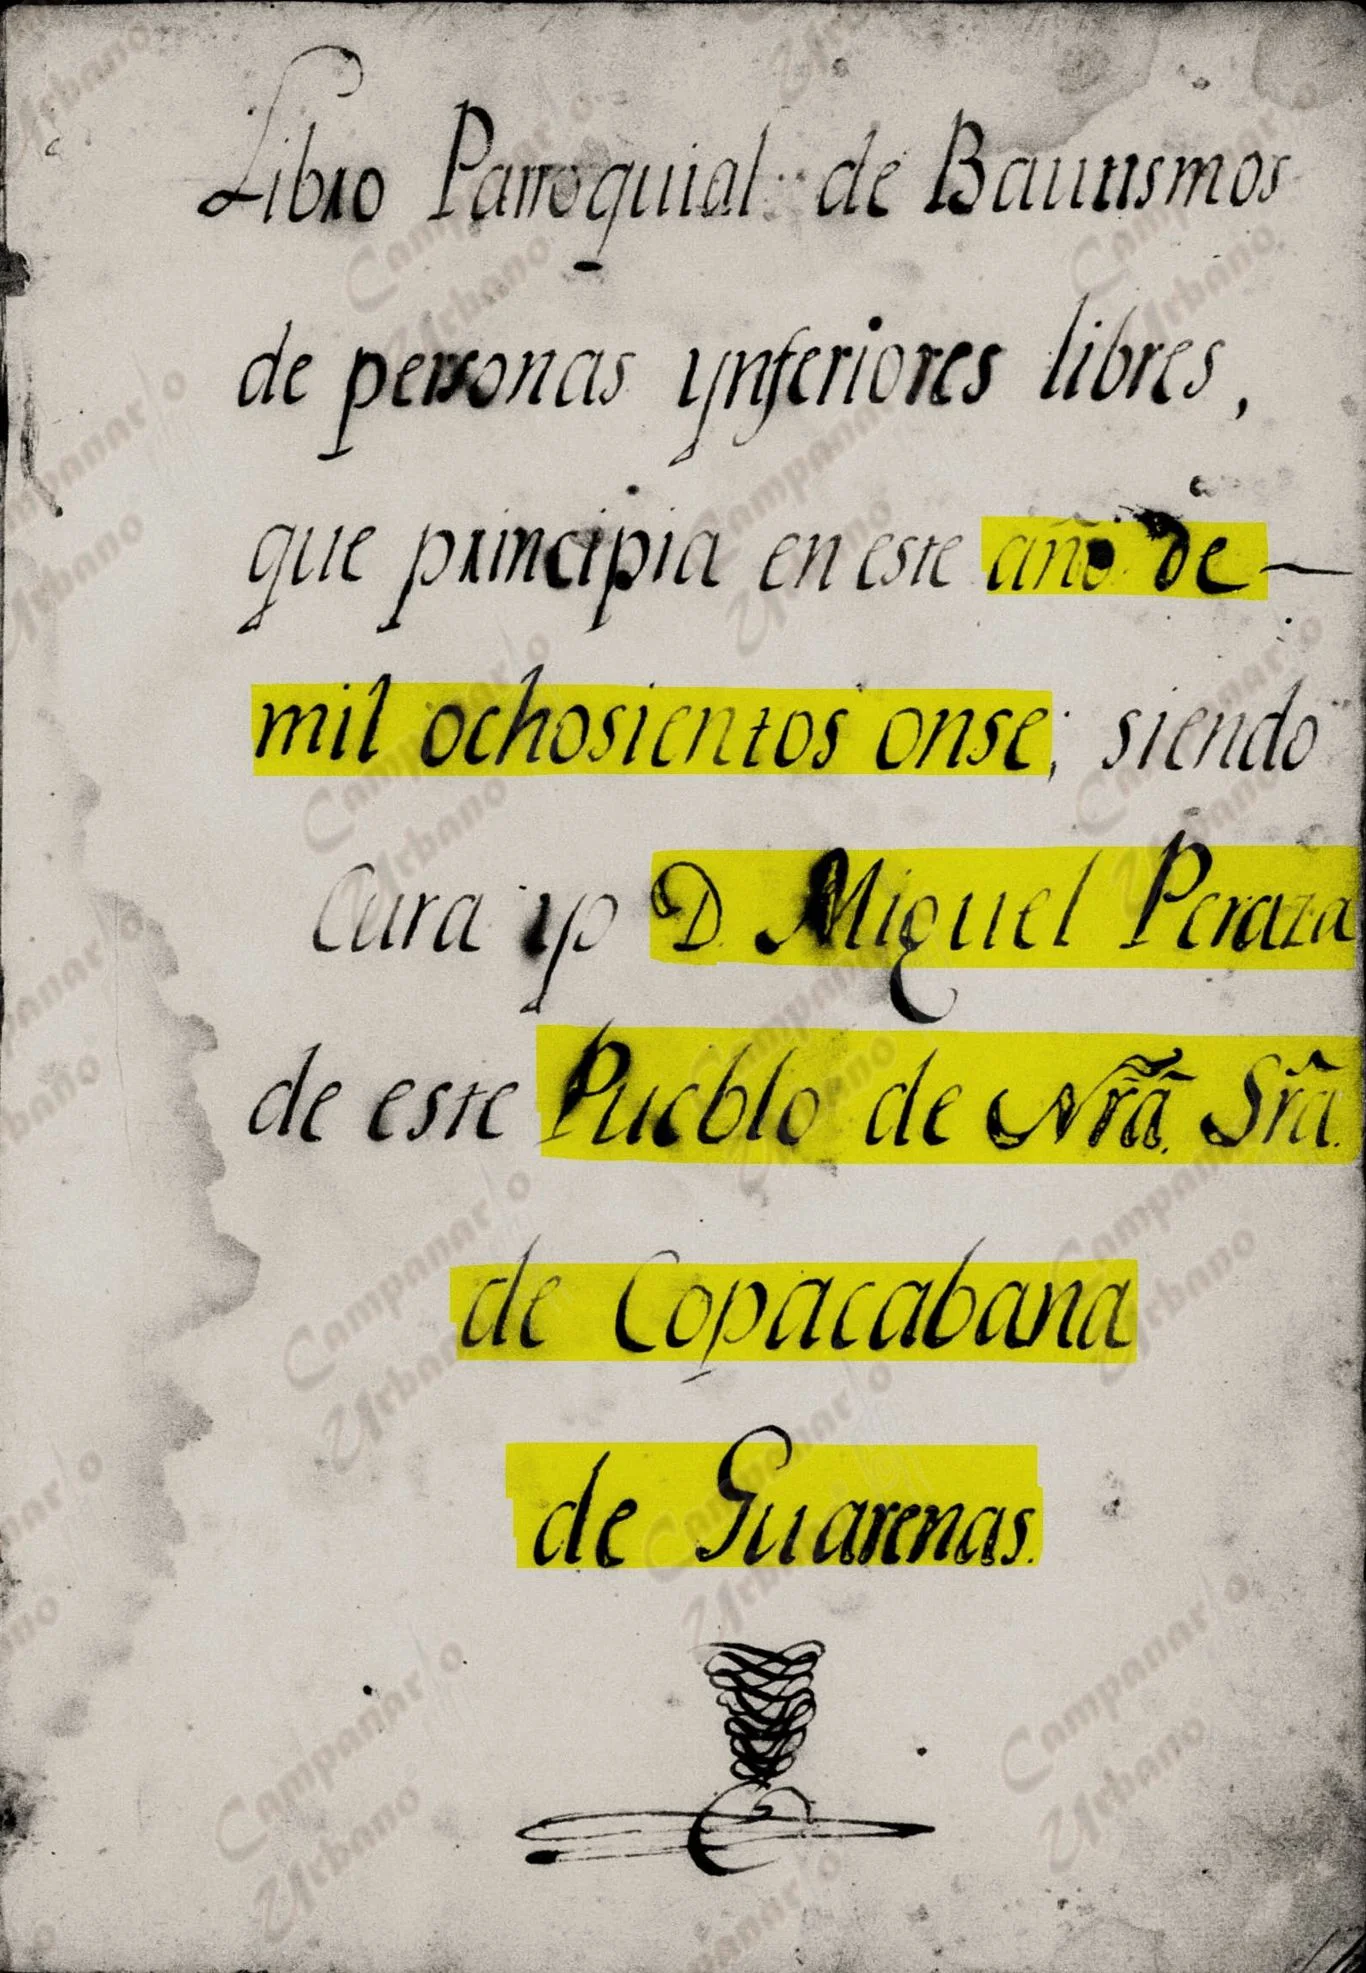 Libro Parroquial de Bautismos de personas inferiores libres del pueblo de Nuestra Señora de Copacabana de Guarenas. Cura Don Miguel Peraza. Año 1811.